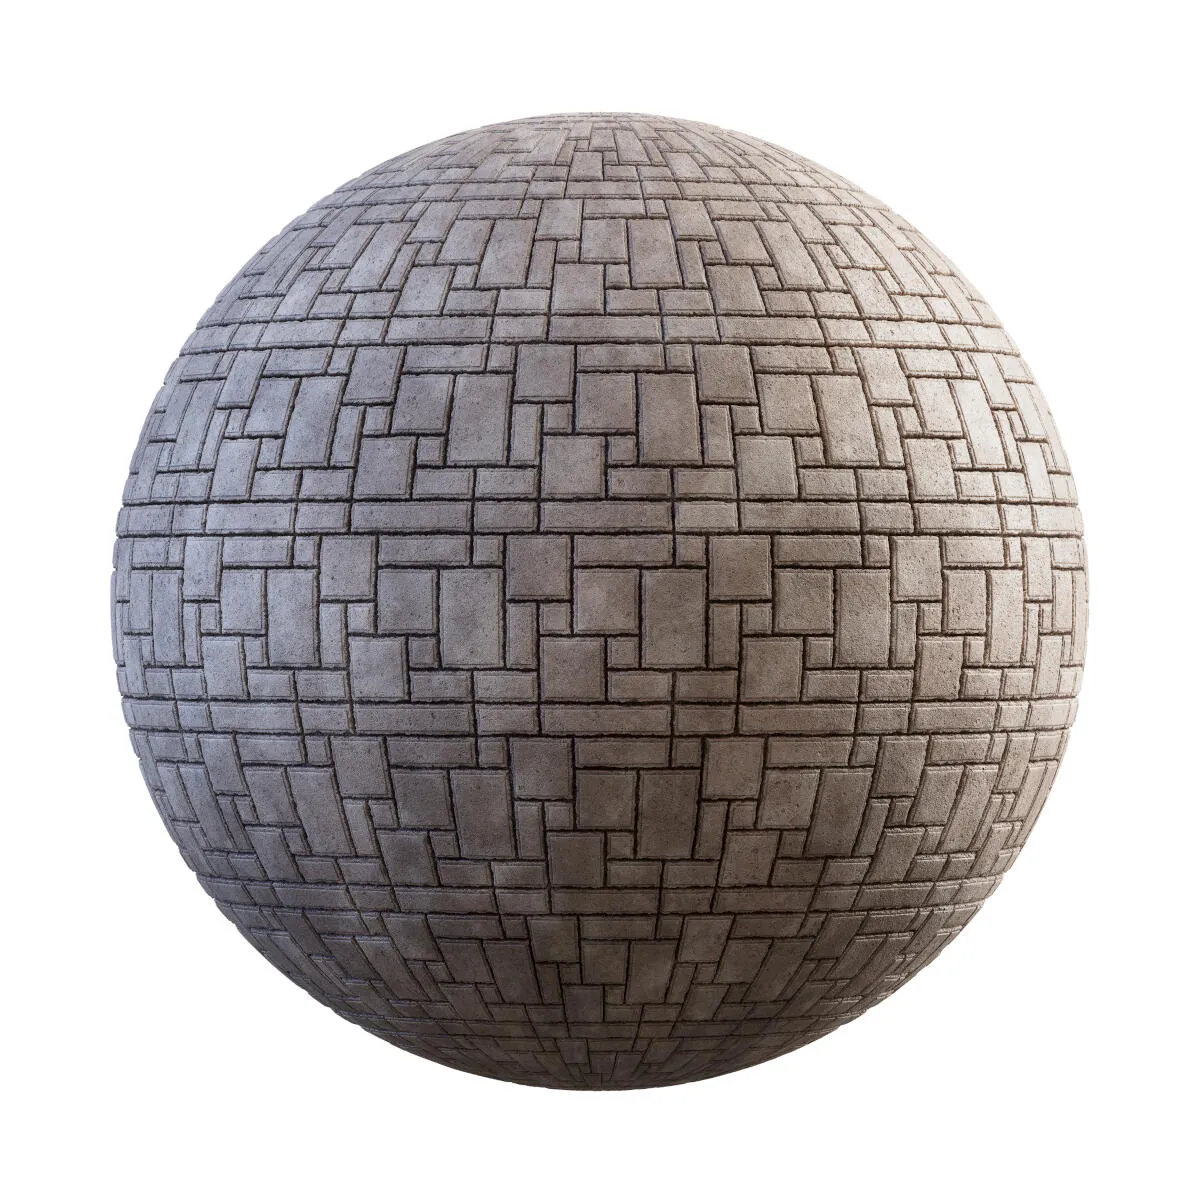 PBR Textures Volume 34 – Pavements – 4K – beige_rectangular_stone_pavement_36_36